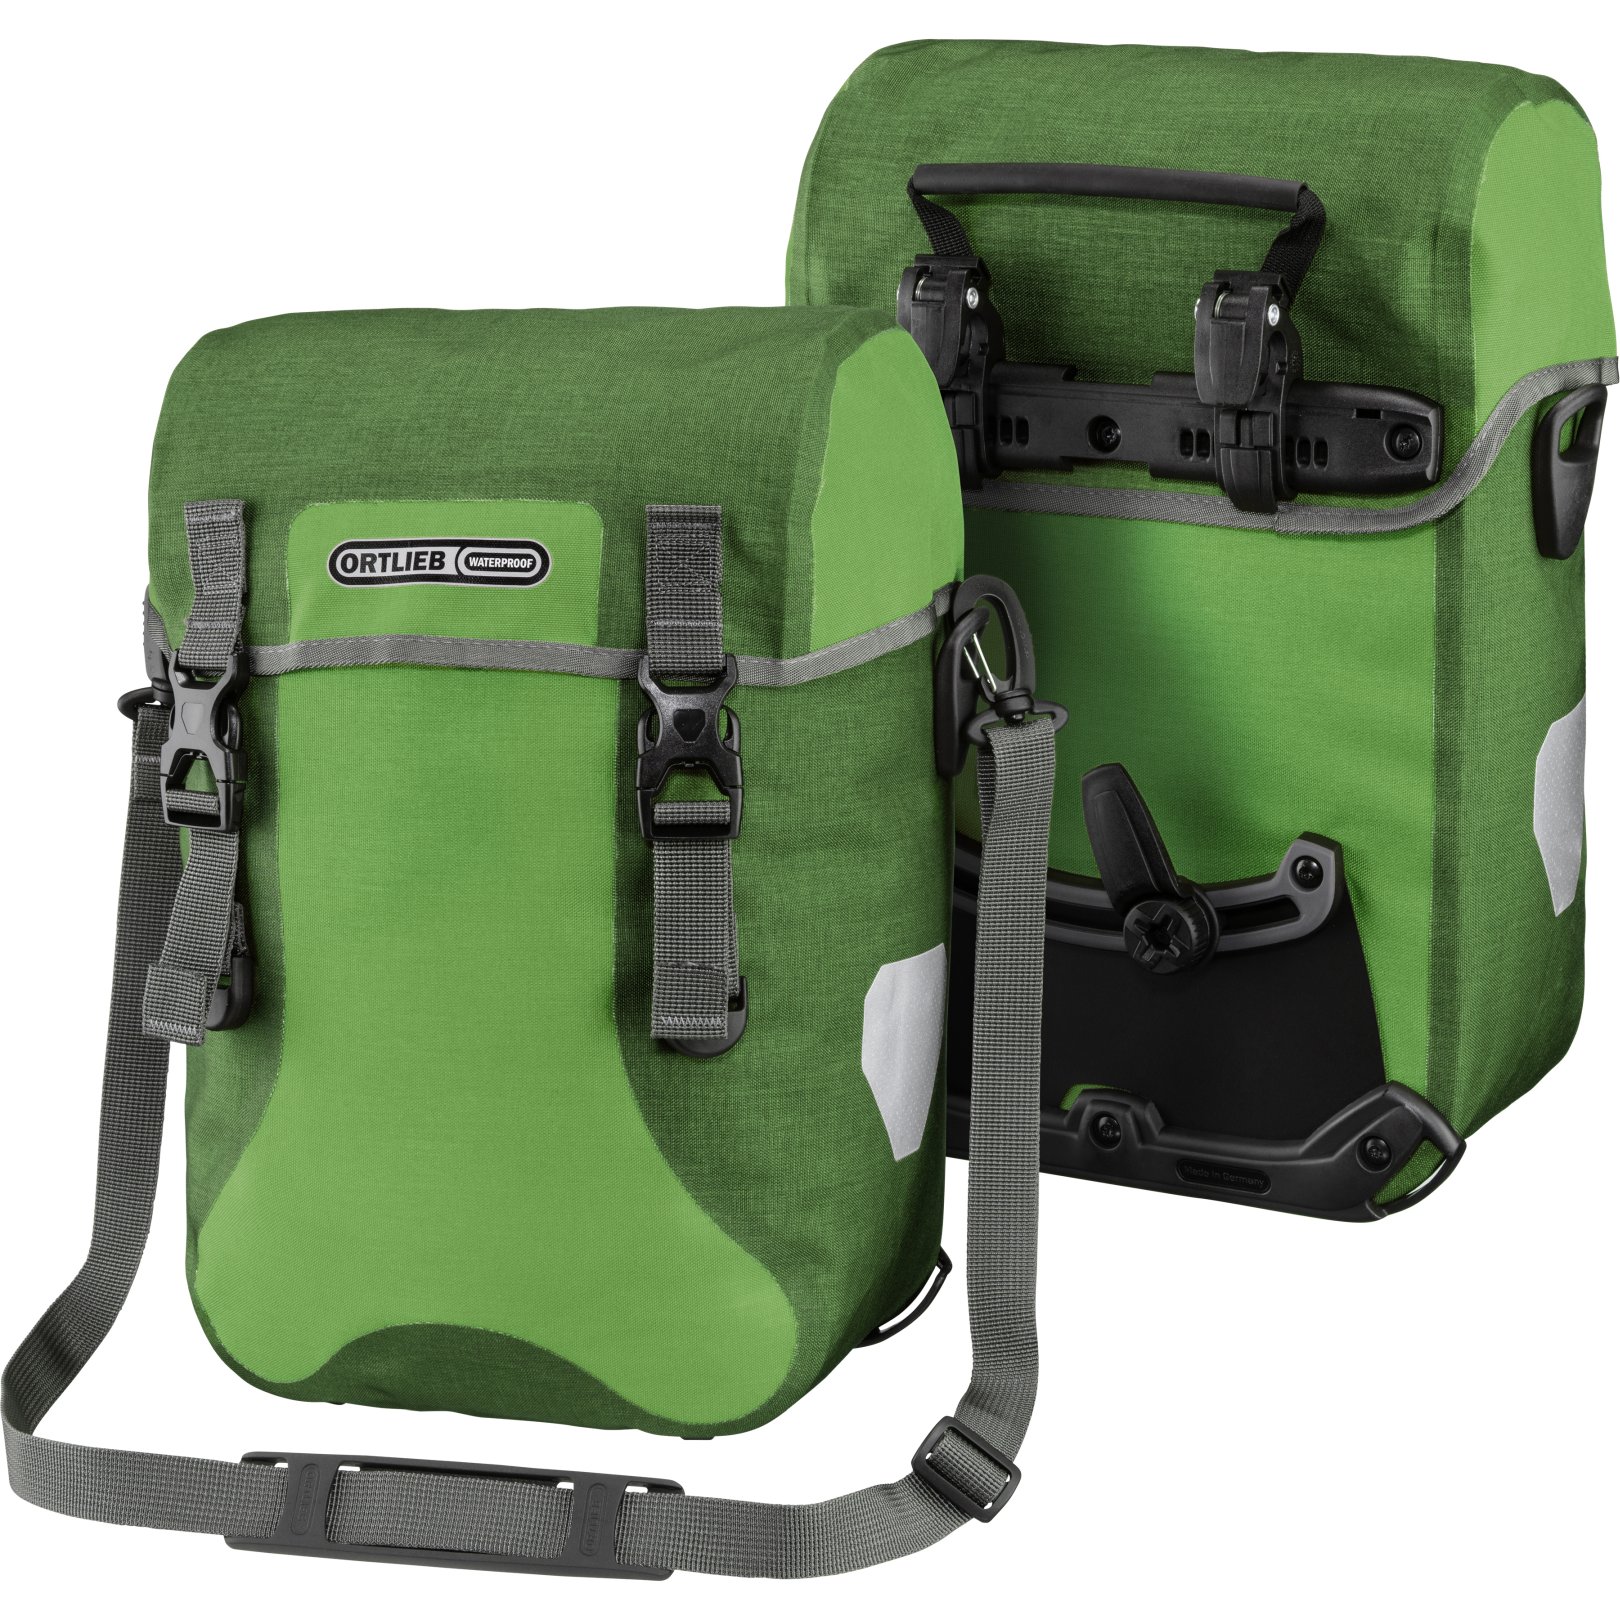 Productfoto van ORTLIEB Sport-Packer Plus - QL2.1 Bike Pannier (pair) - 2x15L - kiwi-moss green